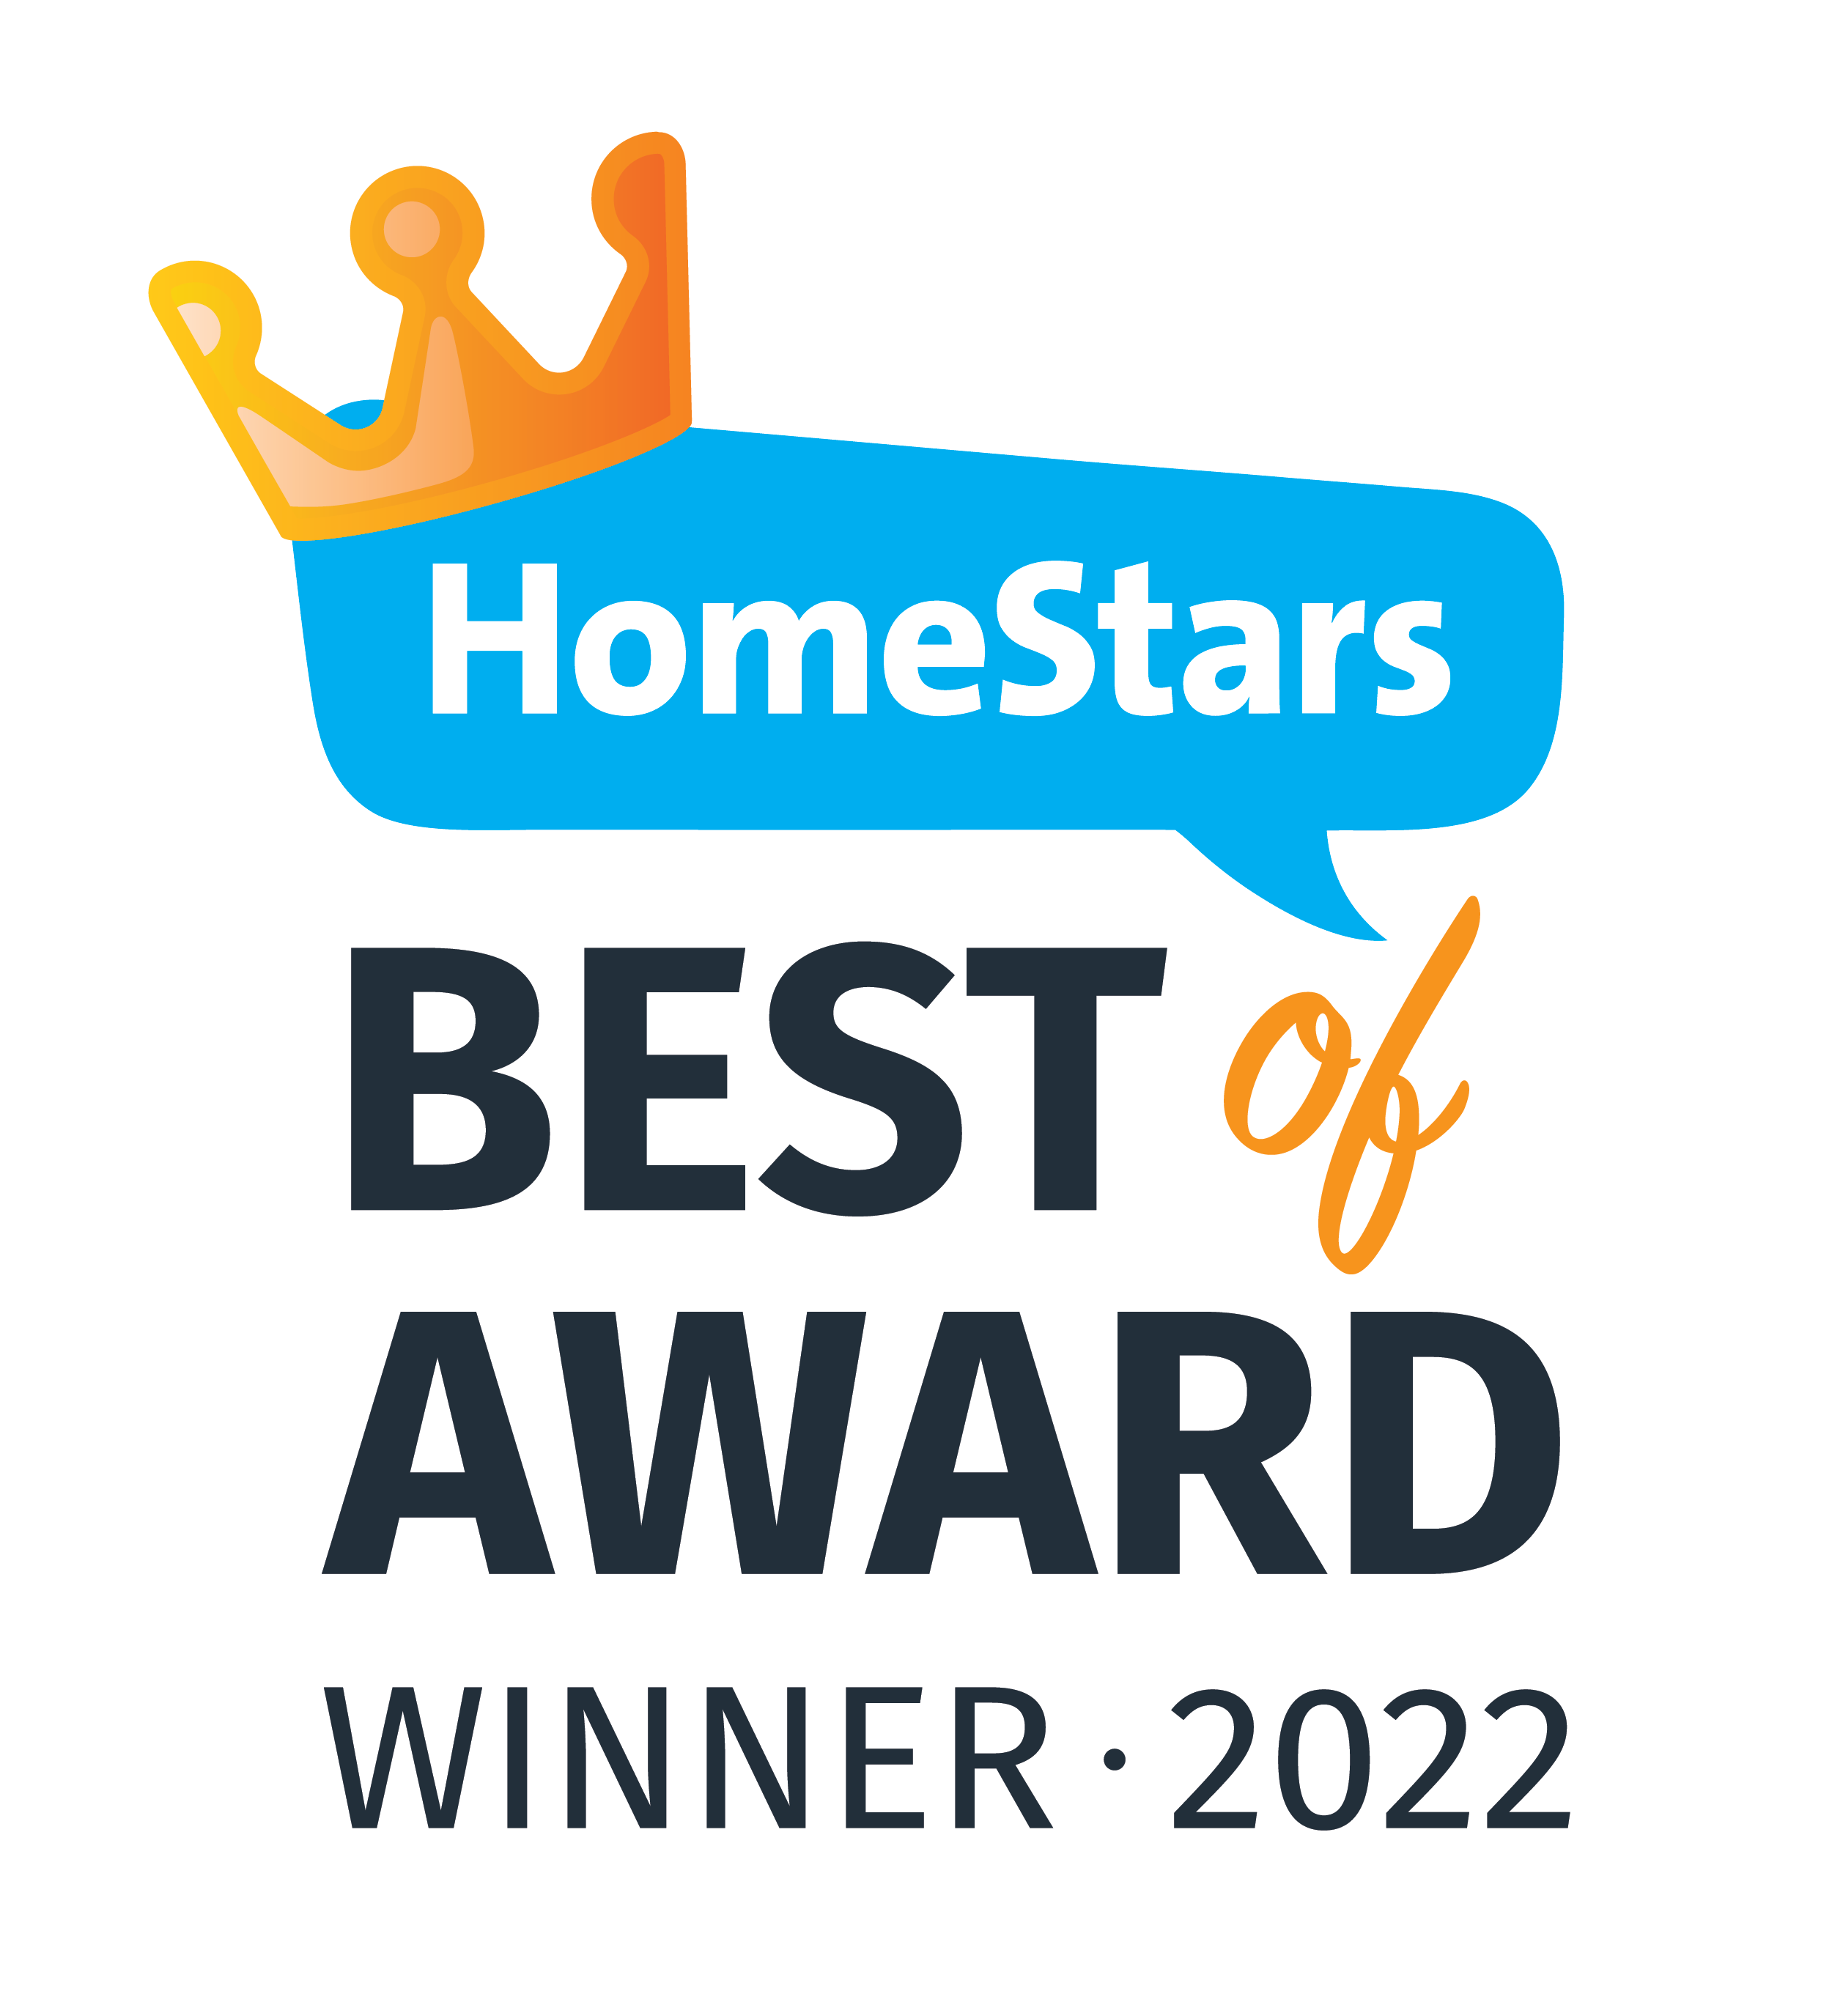 Homestars Best of Award Winner 2022 2